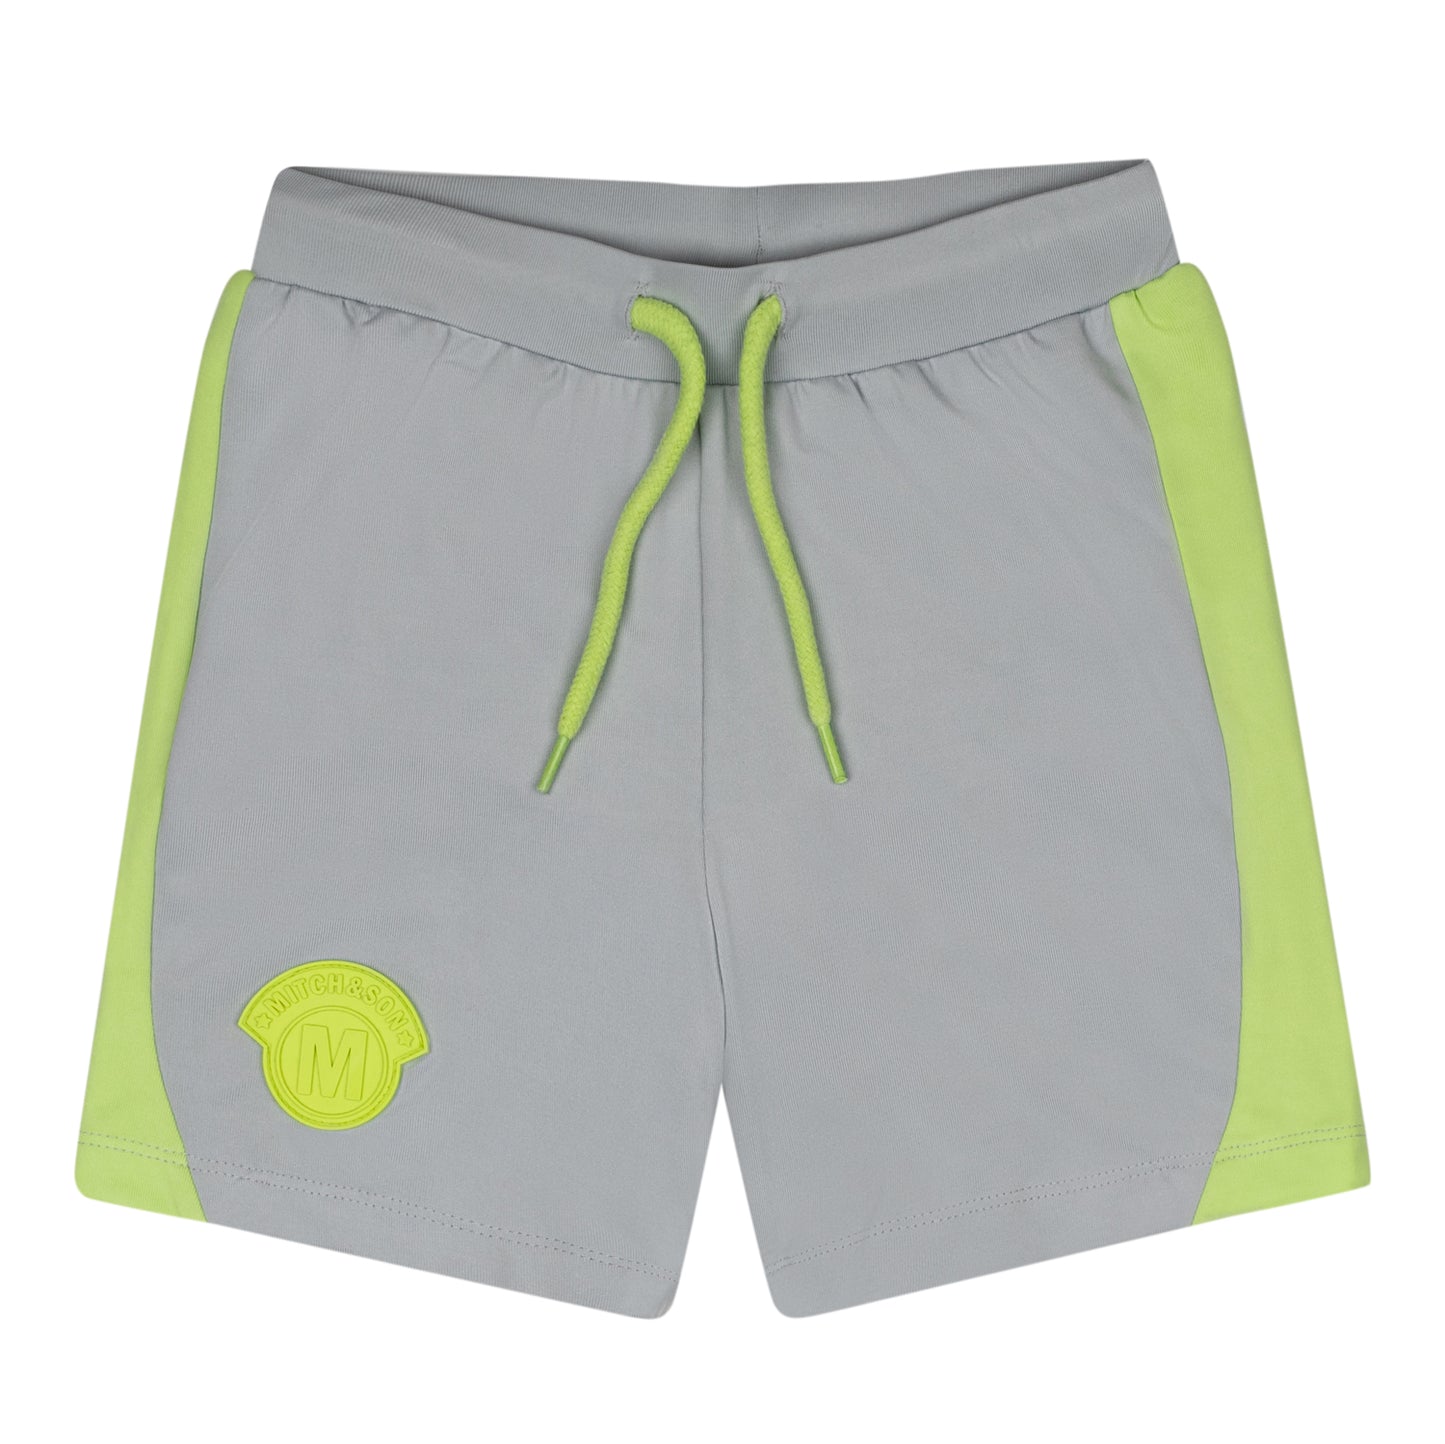 Mitch & Son Grey & Lime Shorts Set